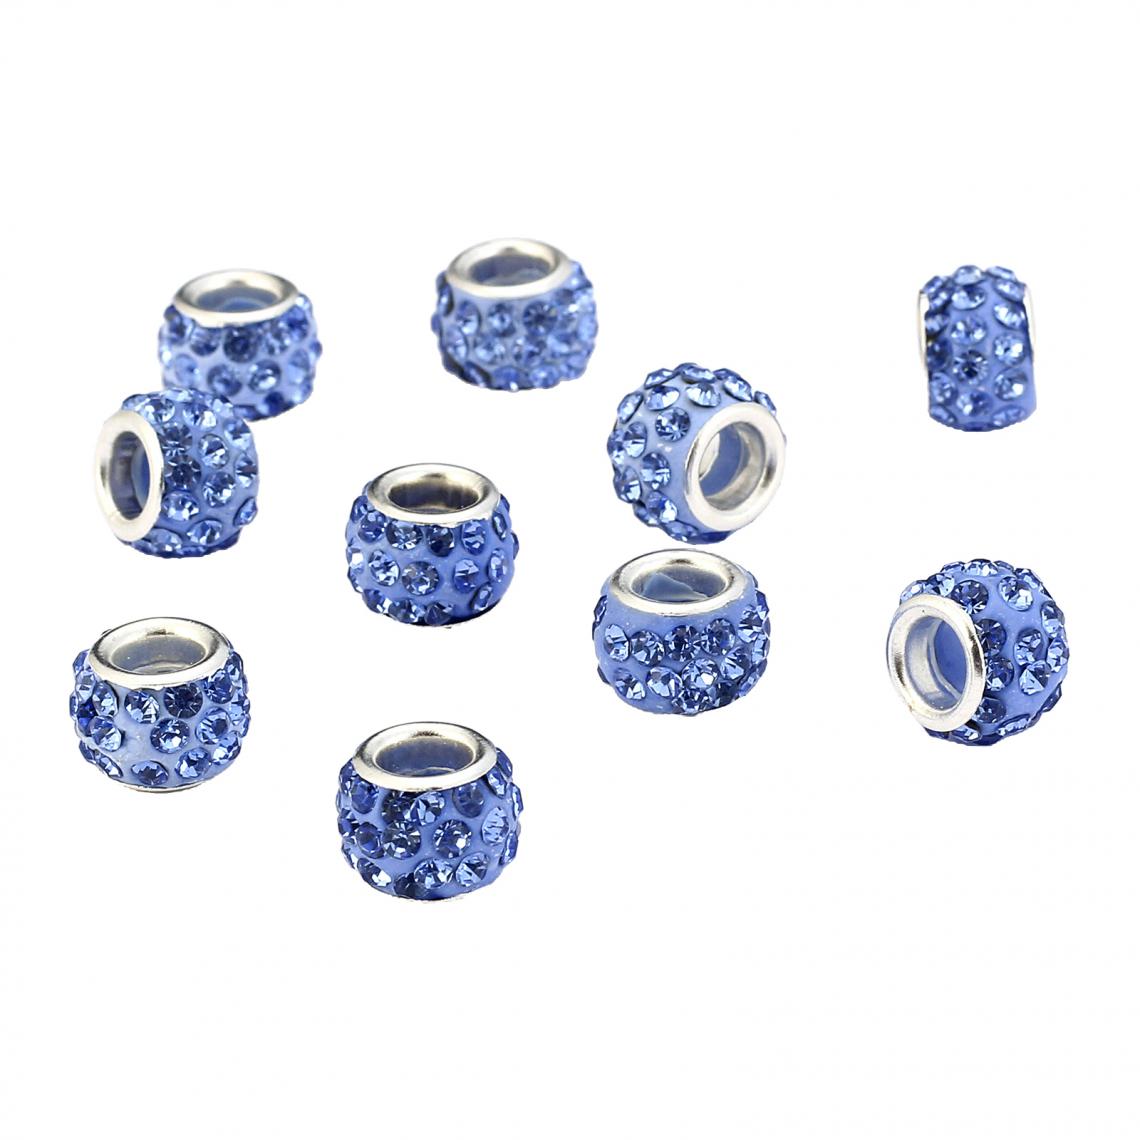 marque generique - 10pcs Perles D'espacement Européennes Bracelet En Strass Résultats De Bijoux Bleu Royal - Perles